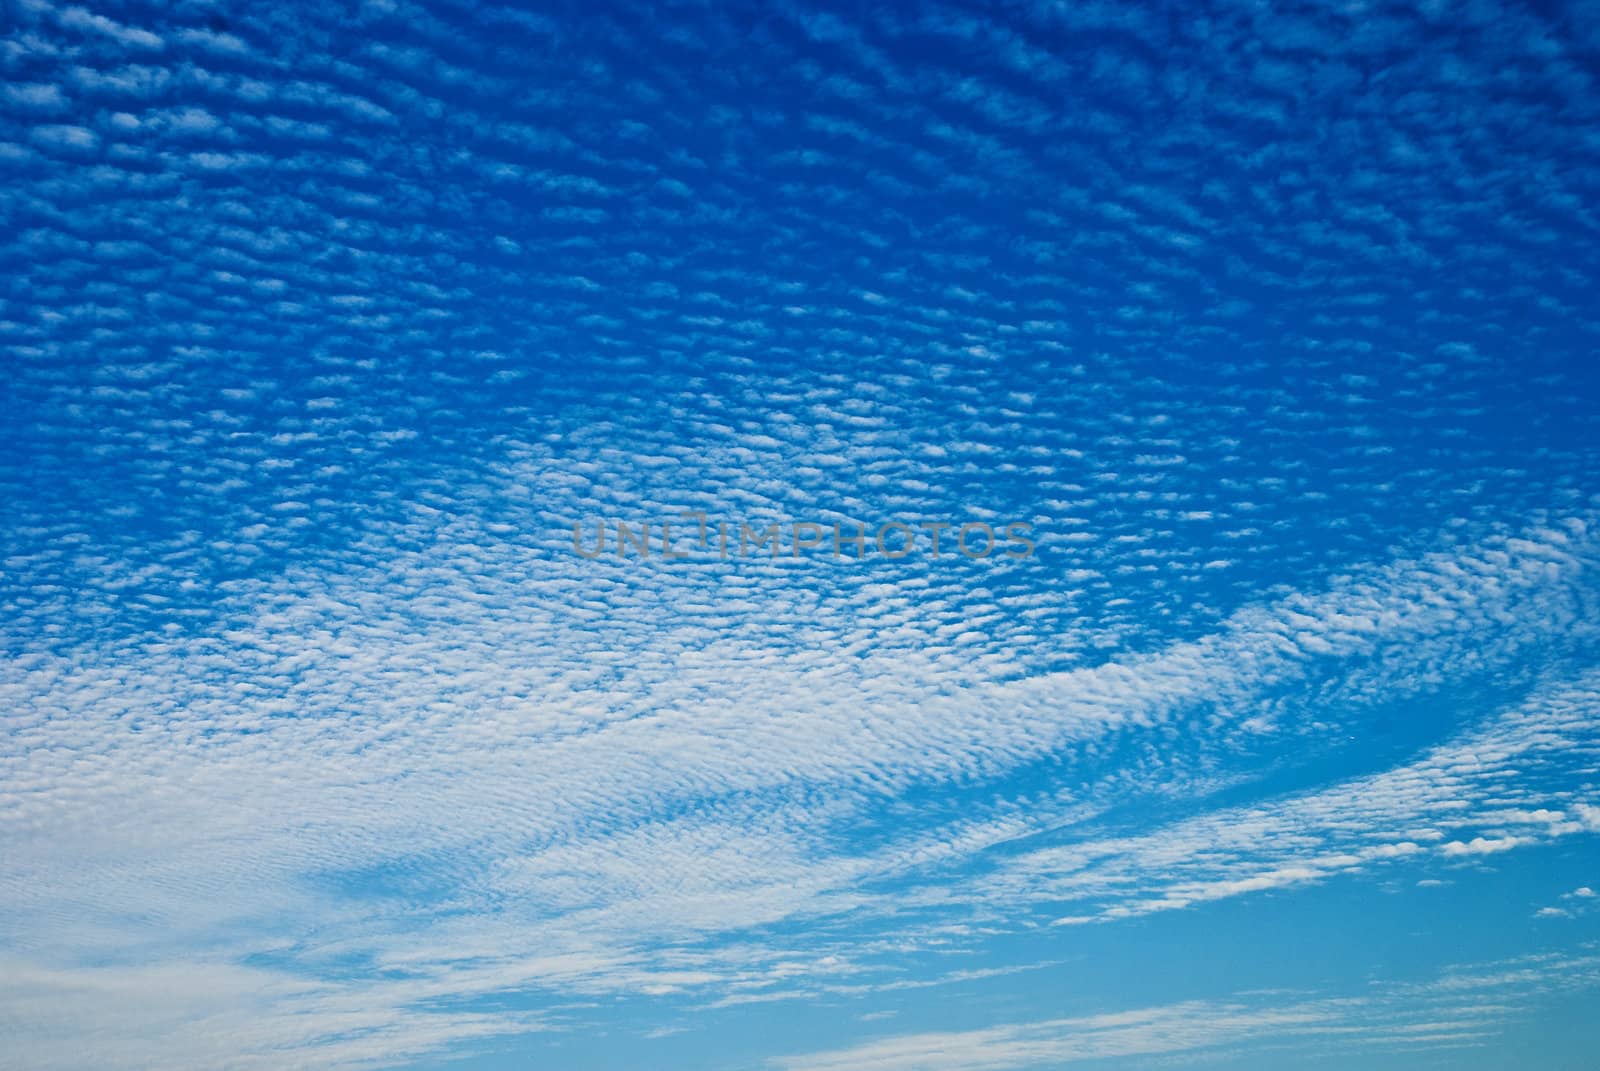 Fish-scale pattern unique clouds